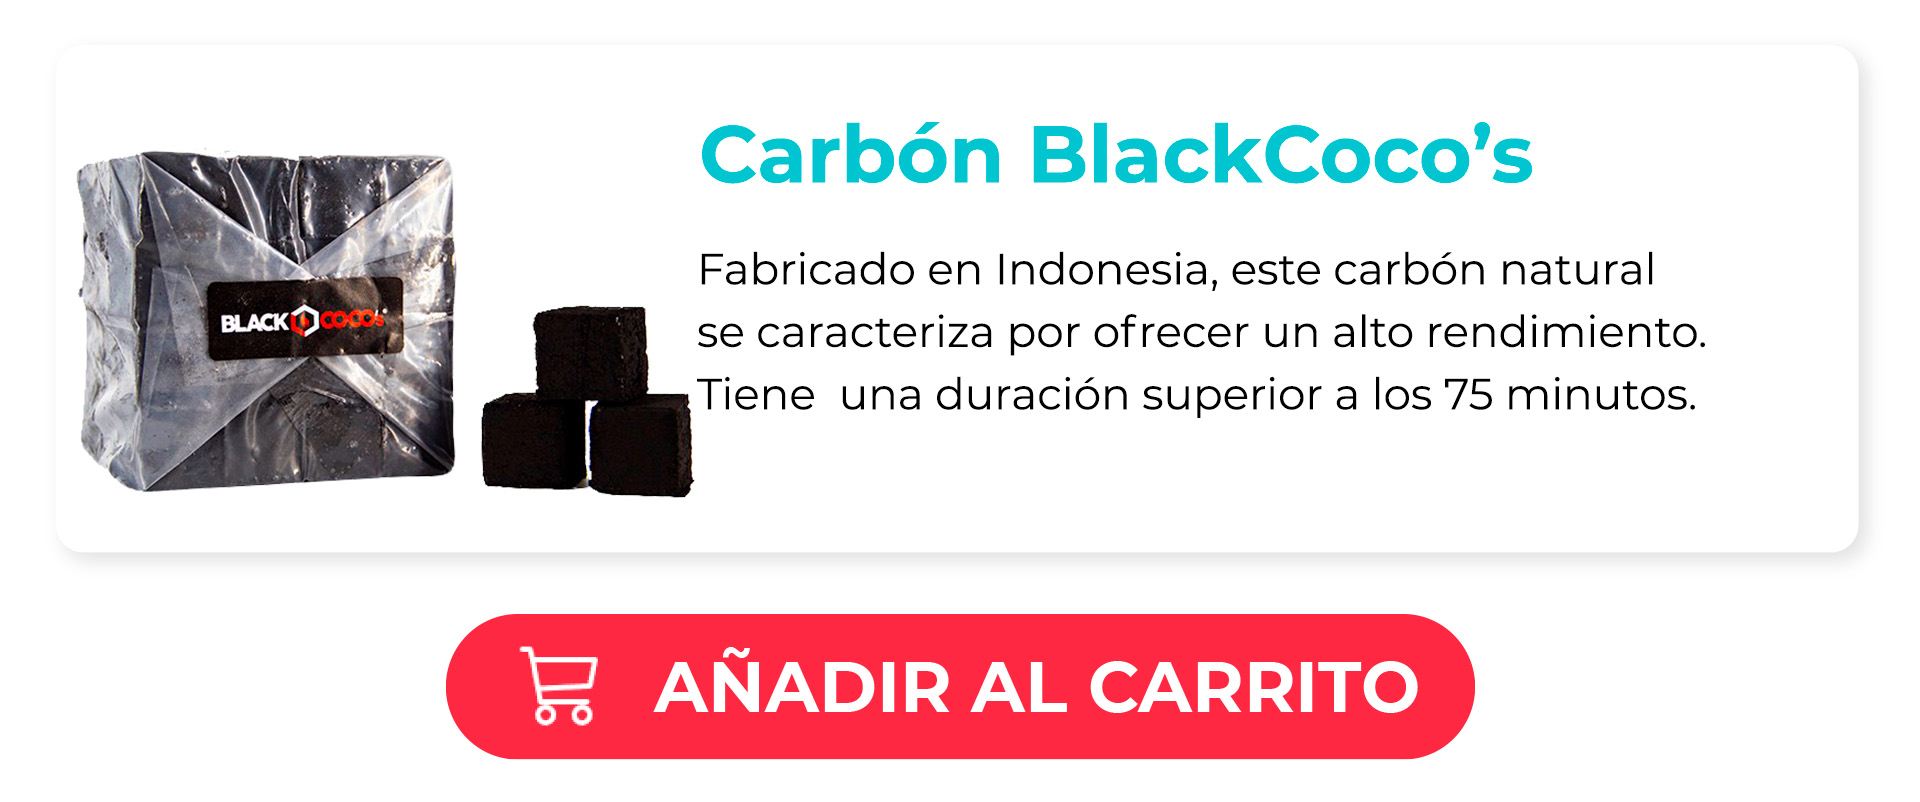 Carbón BlackCocos